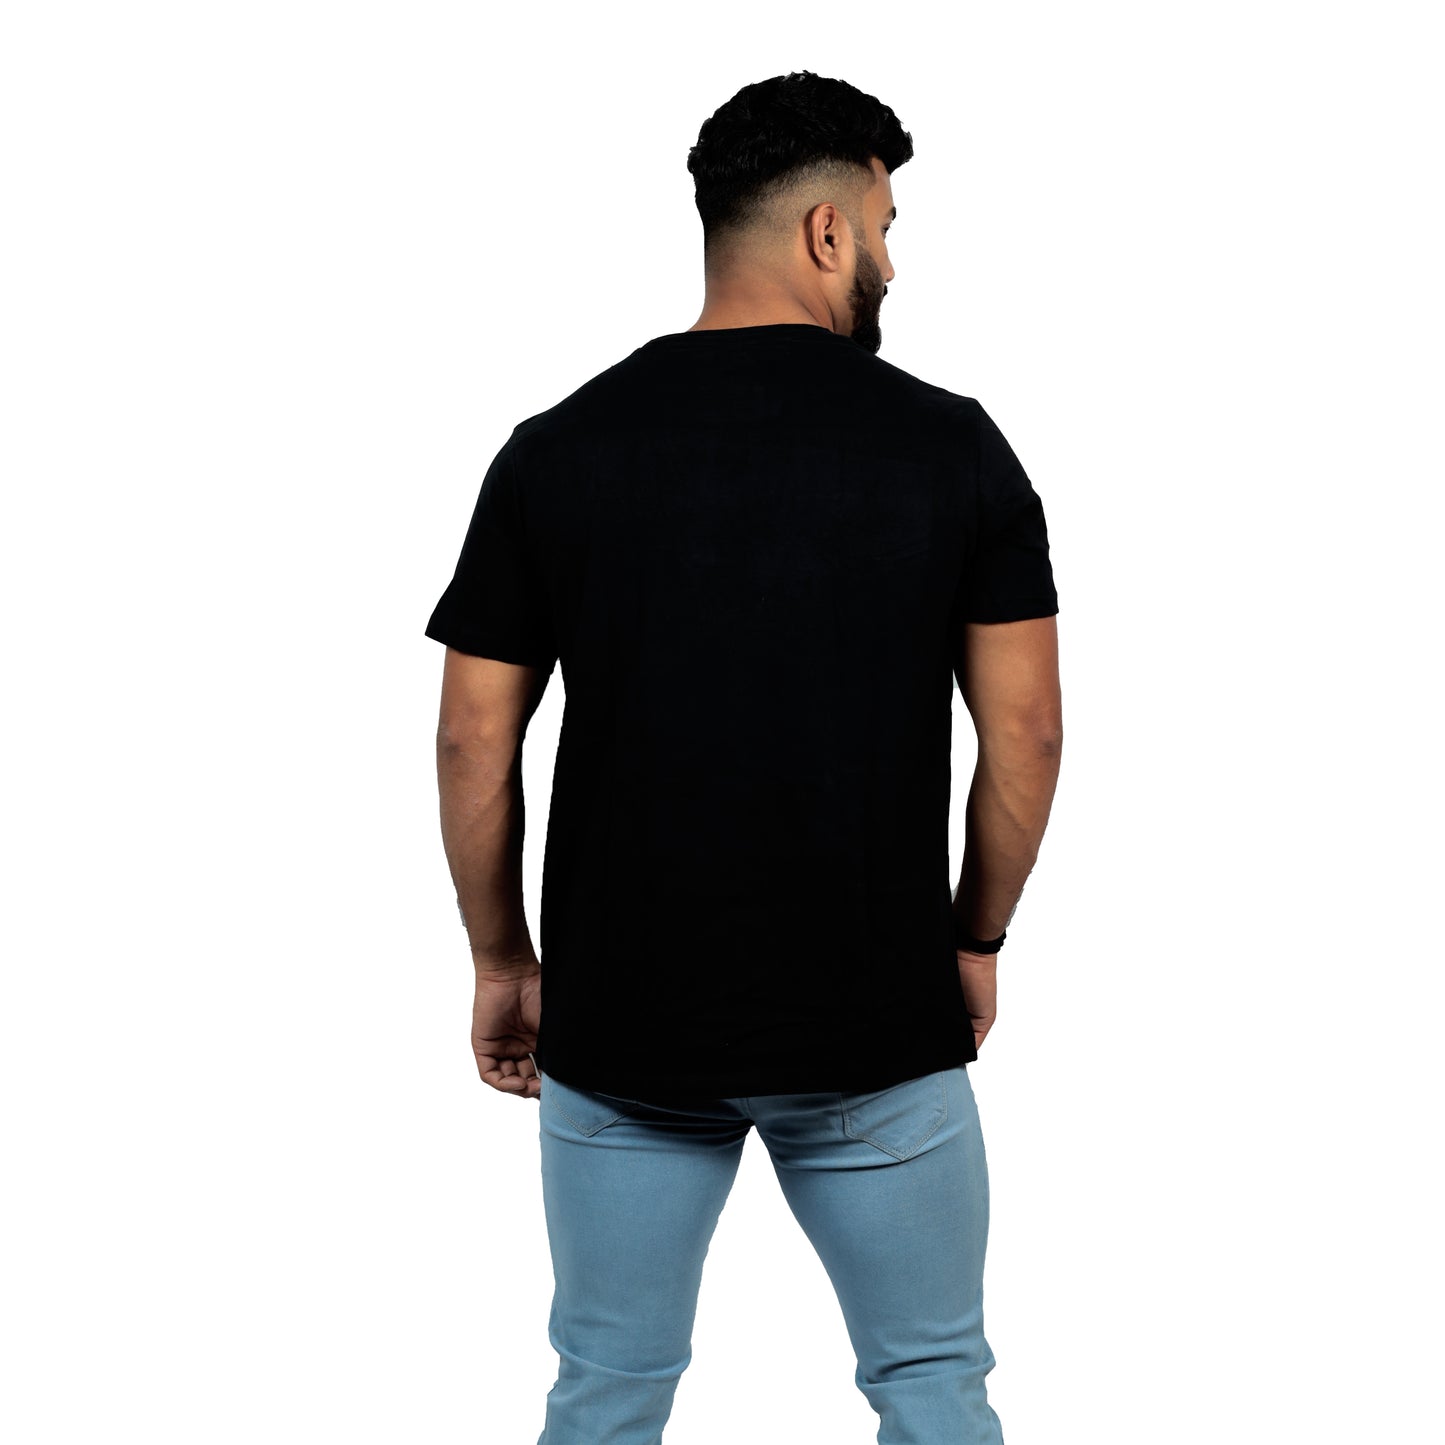 Buoyancy Artists T-shirt In Black Color For Men